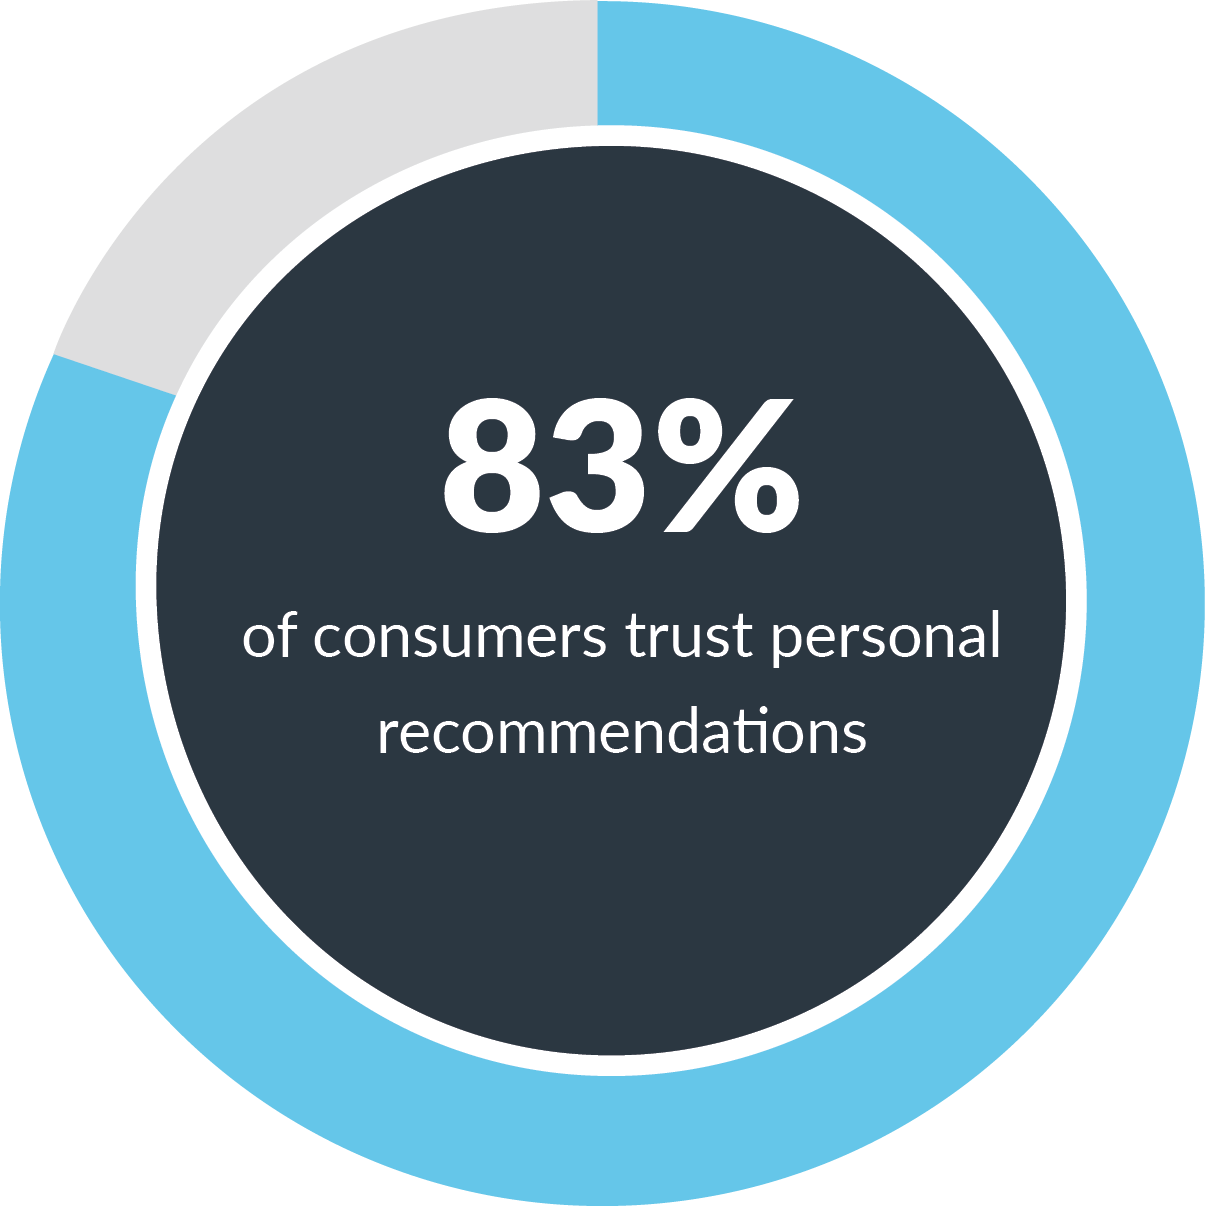 Согласно исследованию Nielson, 83% людей доверяют личным рекомендациям